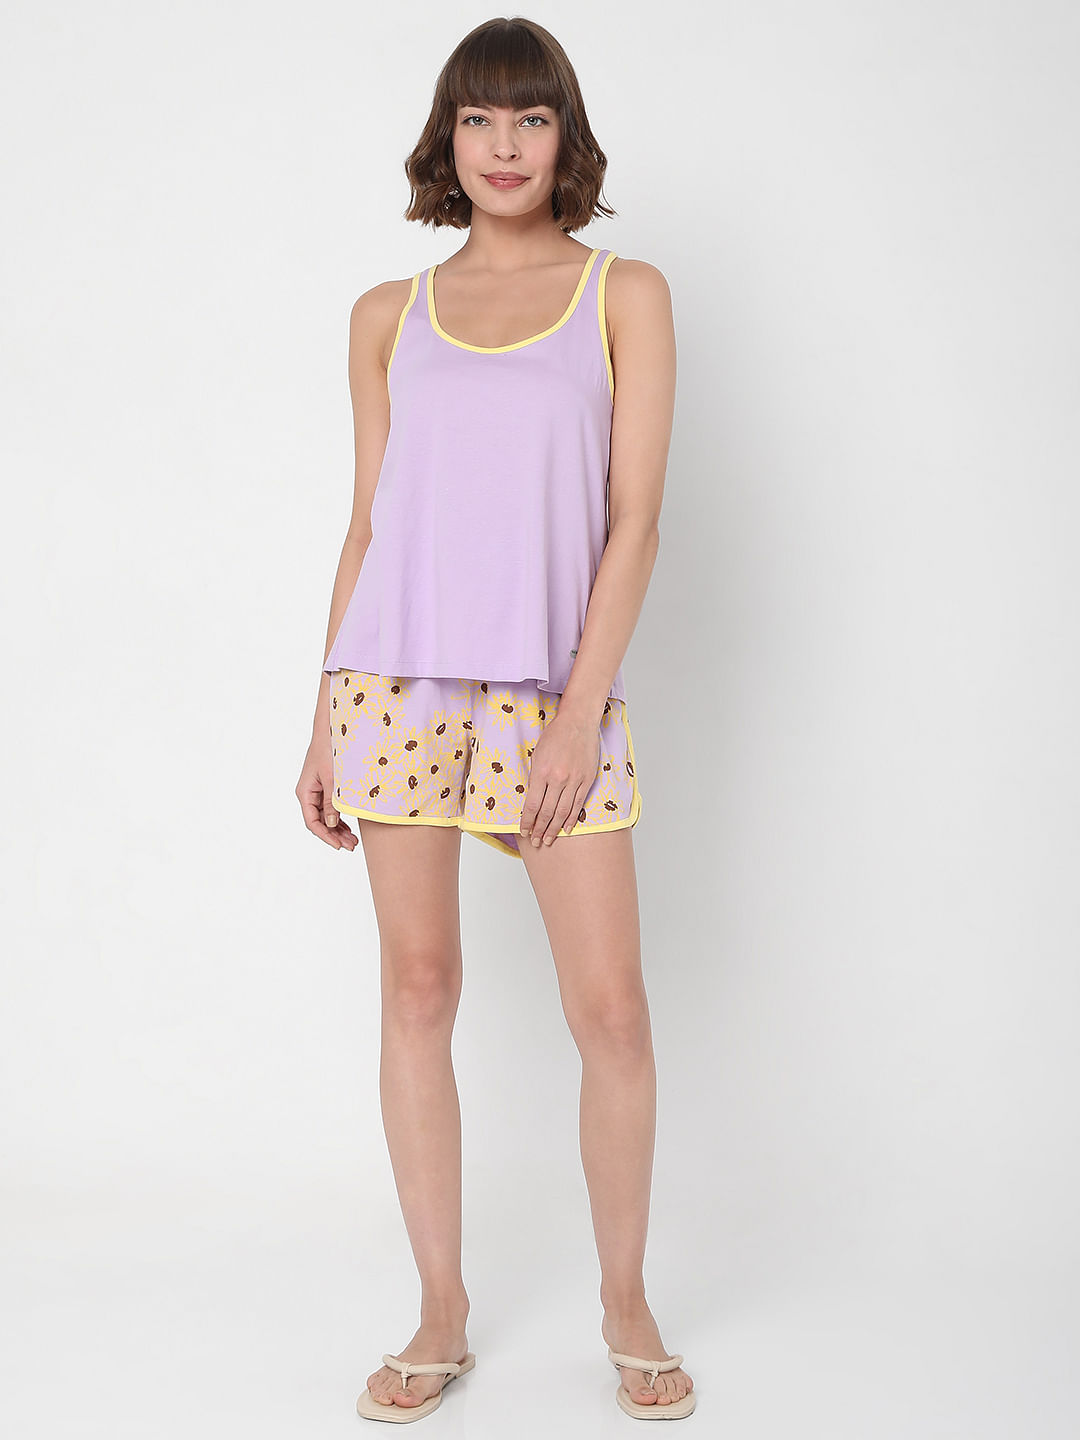 Bimba Women's Cotton Nightwear Button-Down Top With Shorts Cute Night Suit  Set - Walmart.com